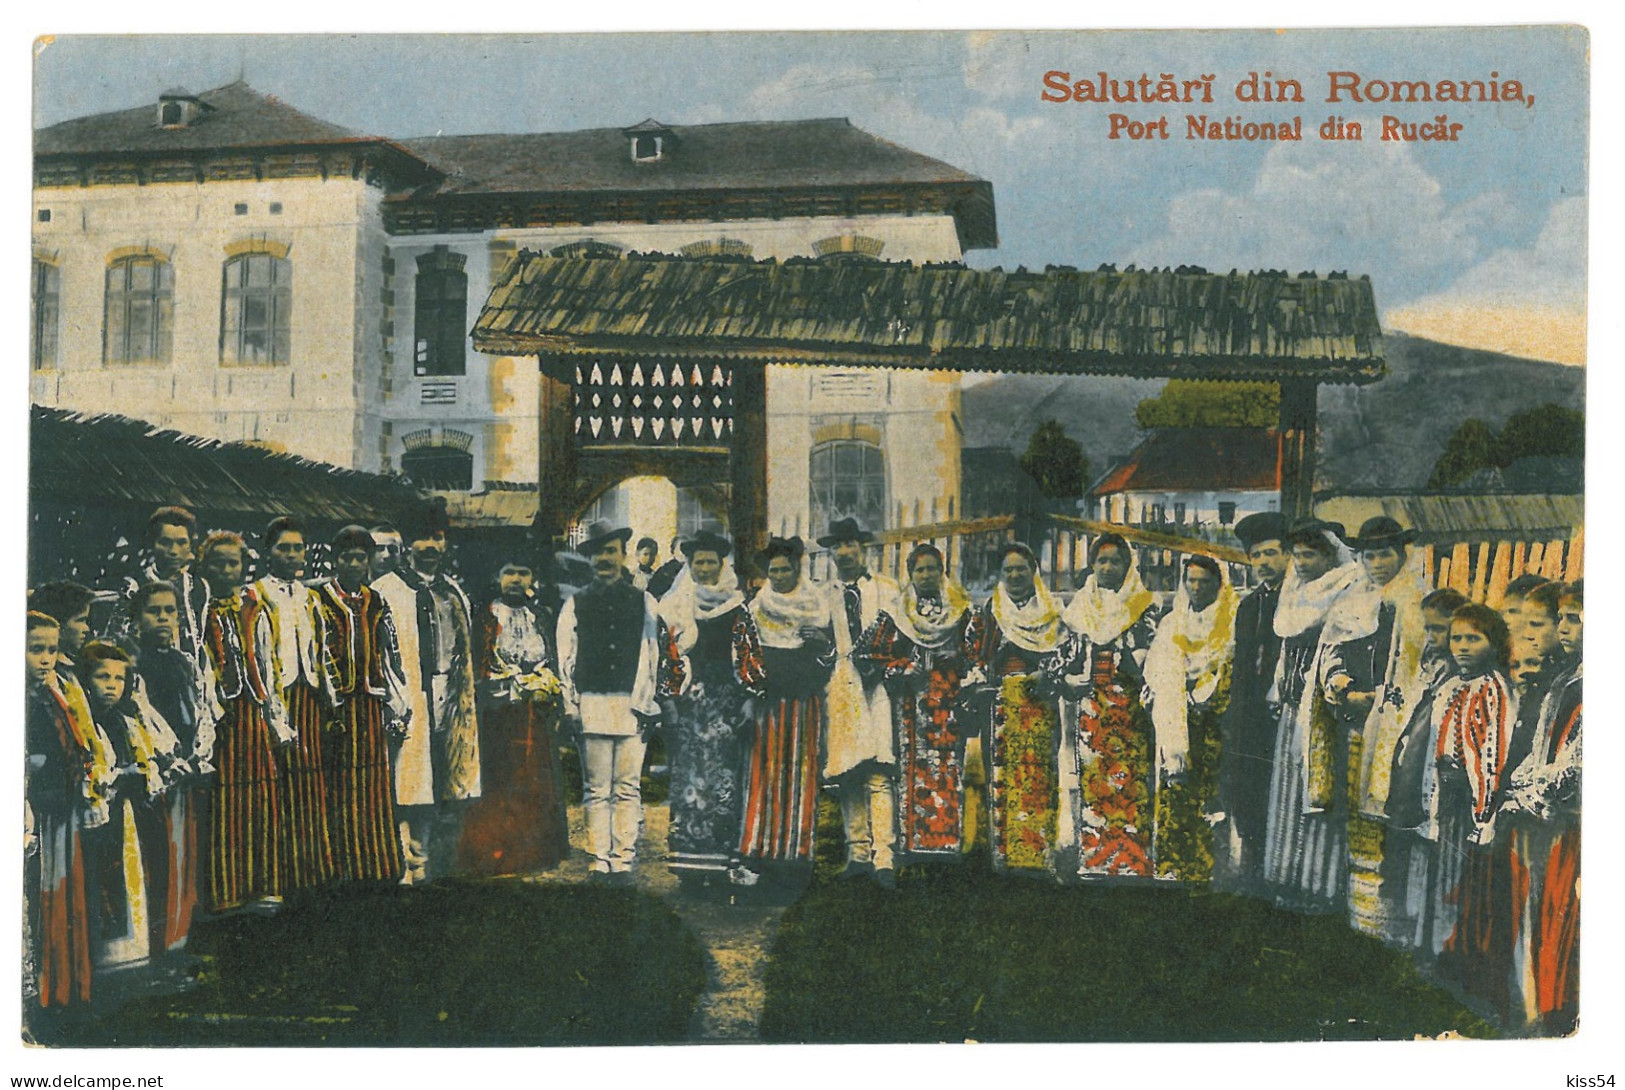 RO 45 - 22643 RUCAR, Brasov, ETHNIC, Romania - Old Postcard, CENSOR - Used - 1917 - Roemenië